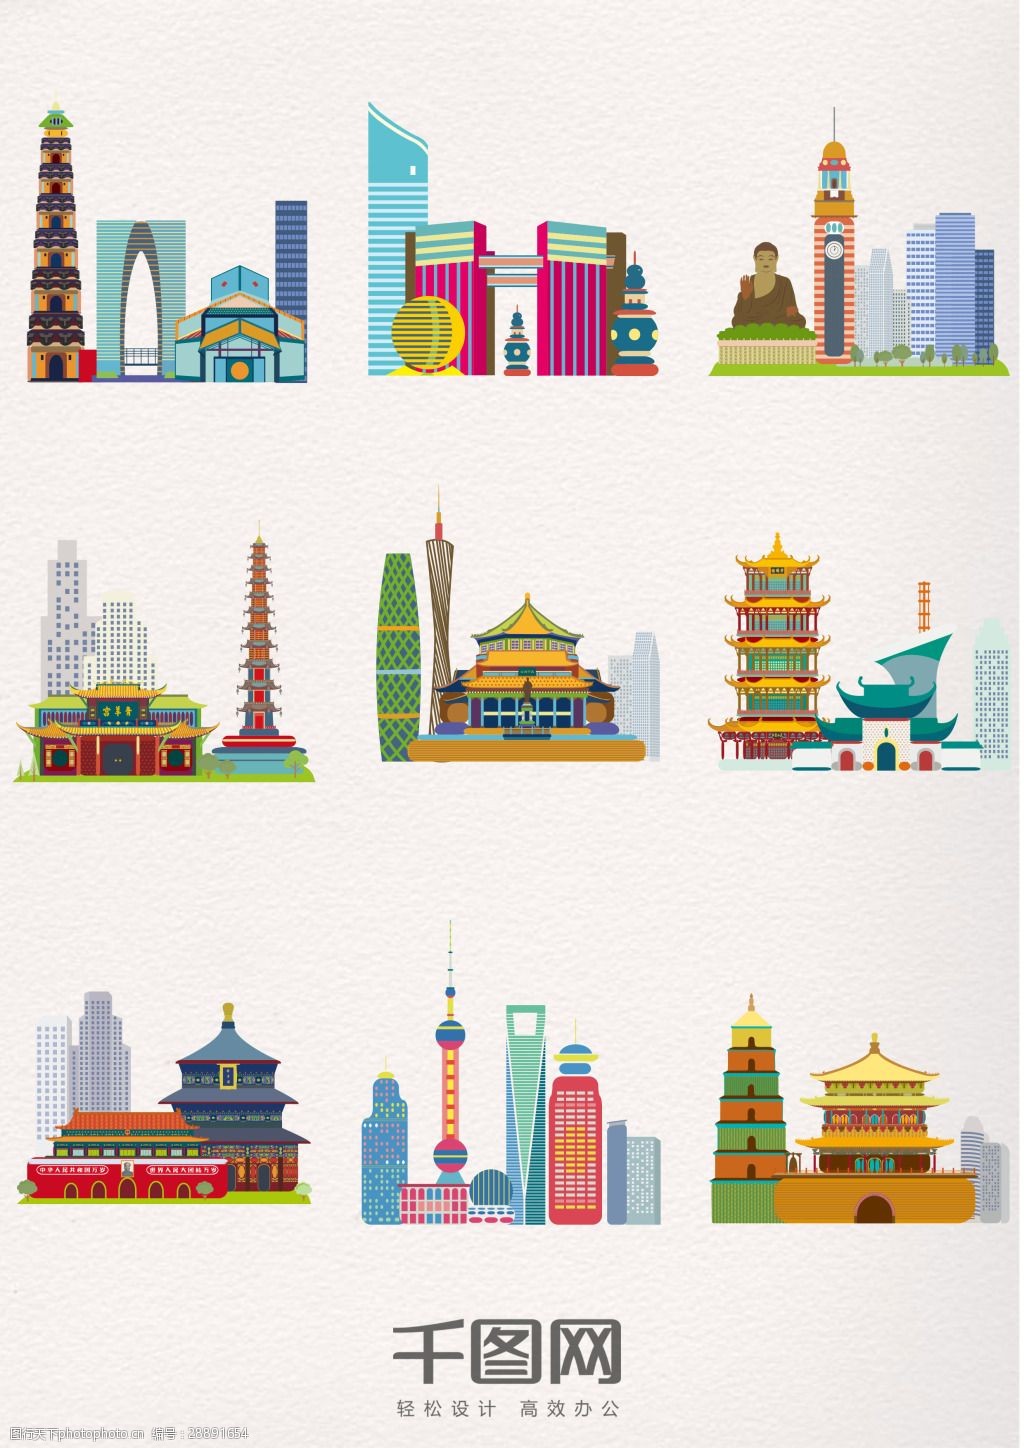 关键词:美丽中国风城市剪影元素 美丽 中国风 多彩 城市 建筑元素